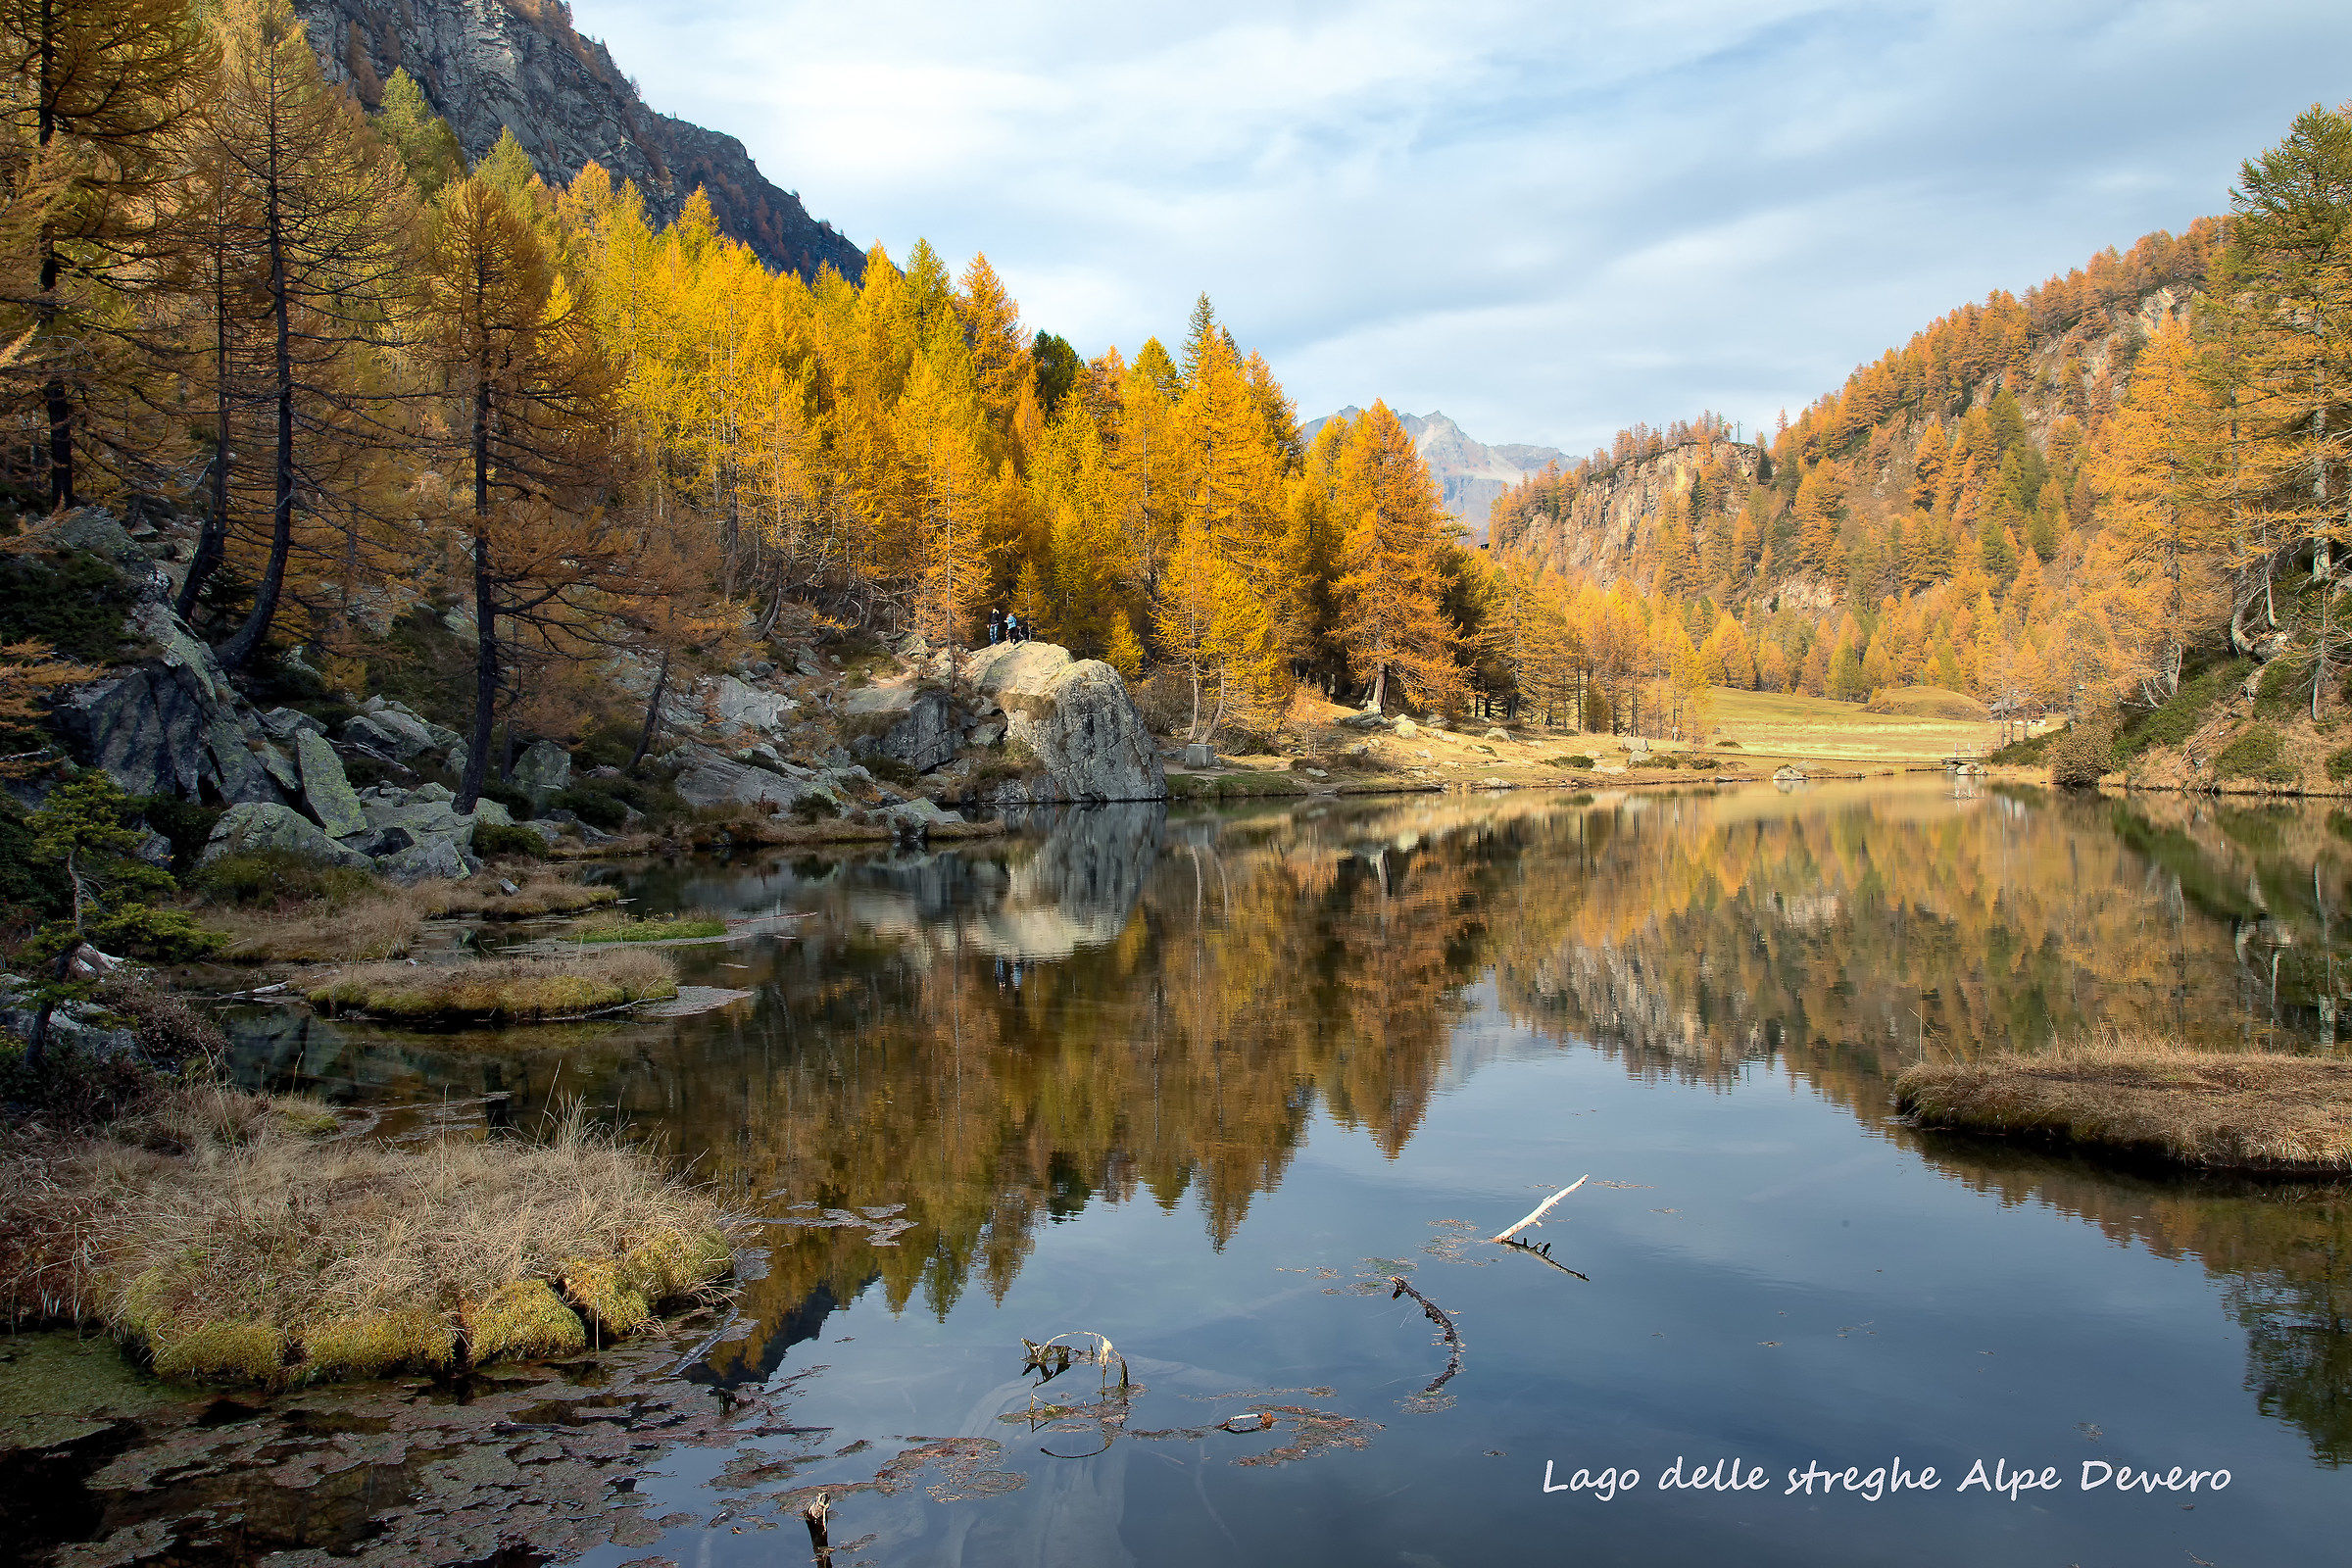 Lago delle streghe Alpe Devero...